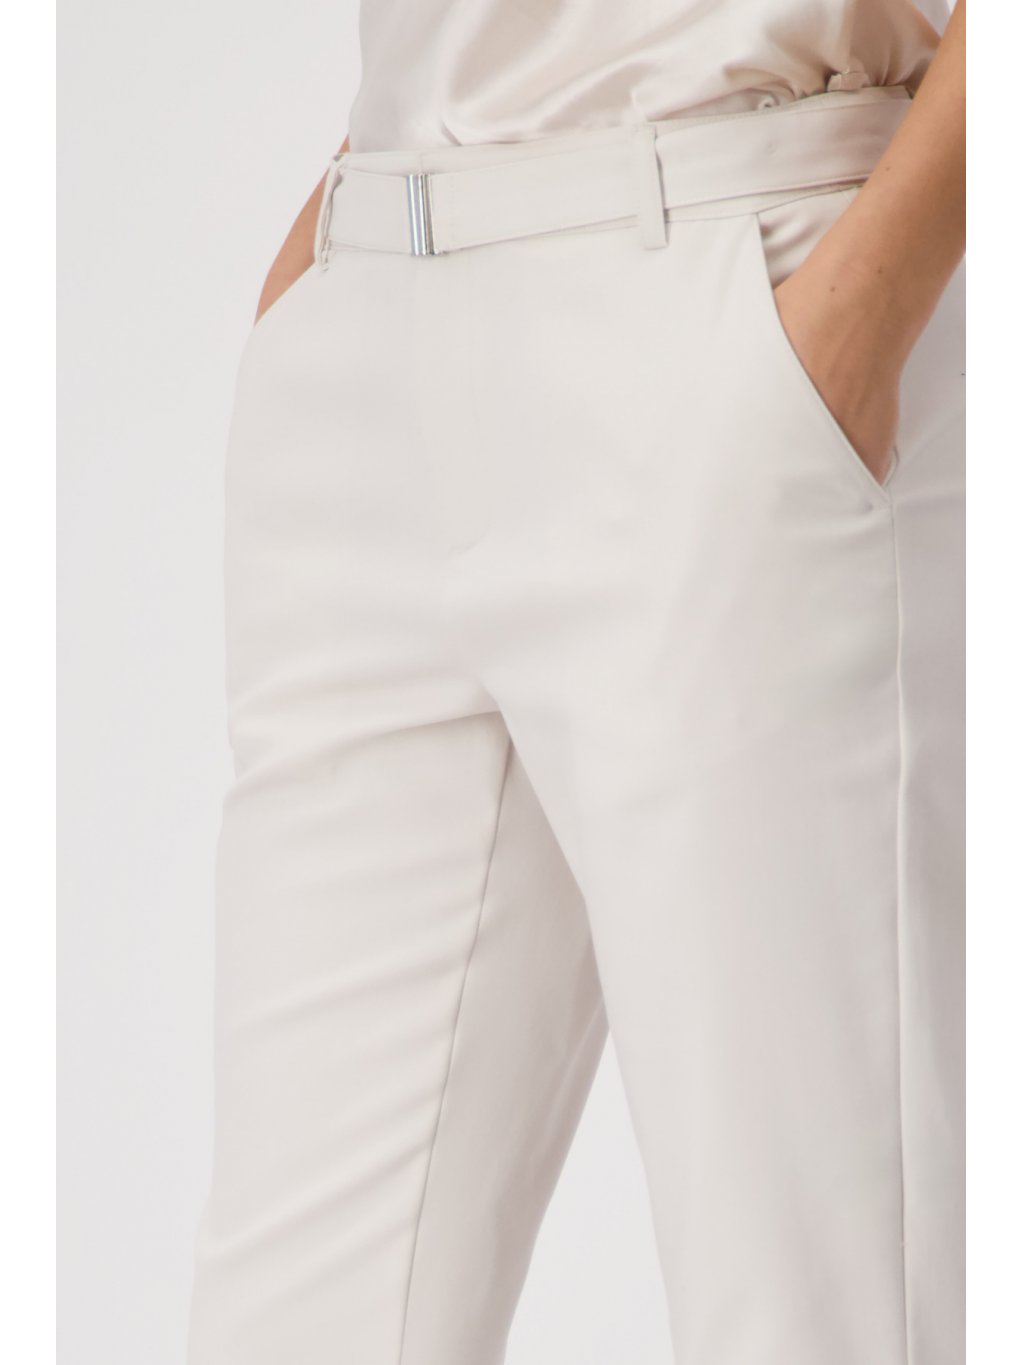 Kalhoty Monari 8590 béžové elastické s páskem 